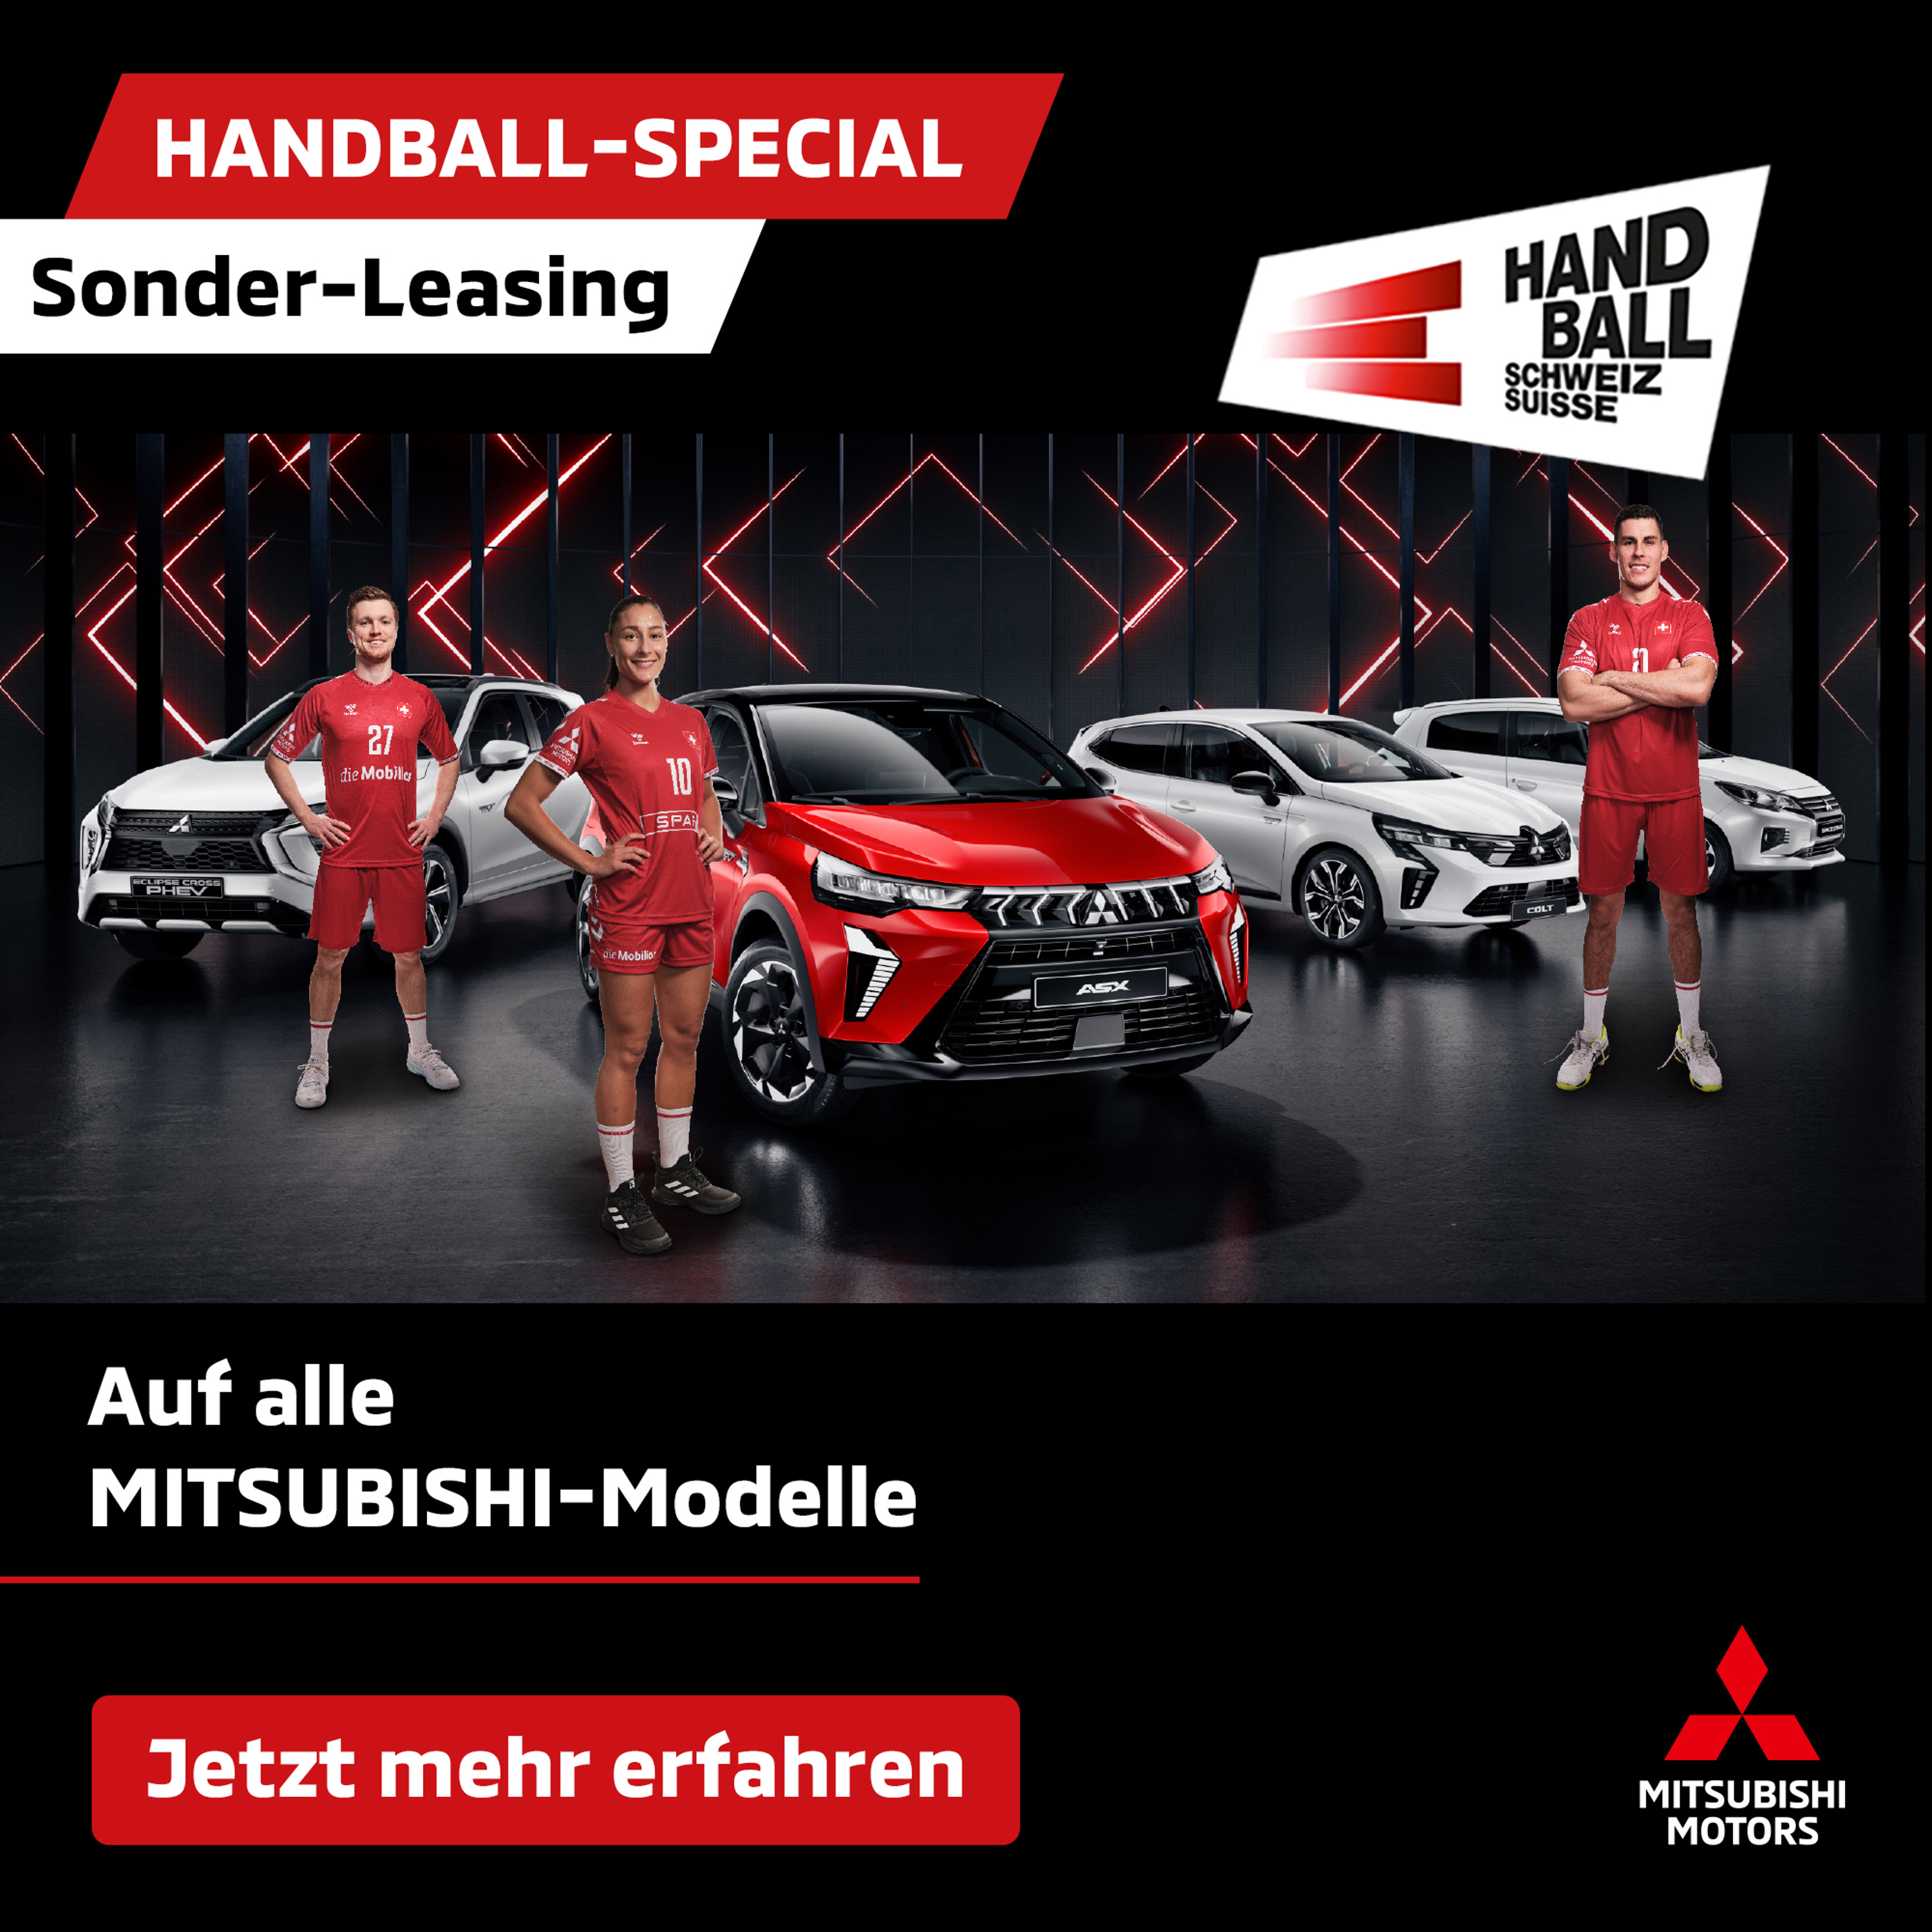 Handball Special Sonder Leasing_neu